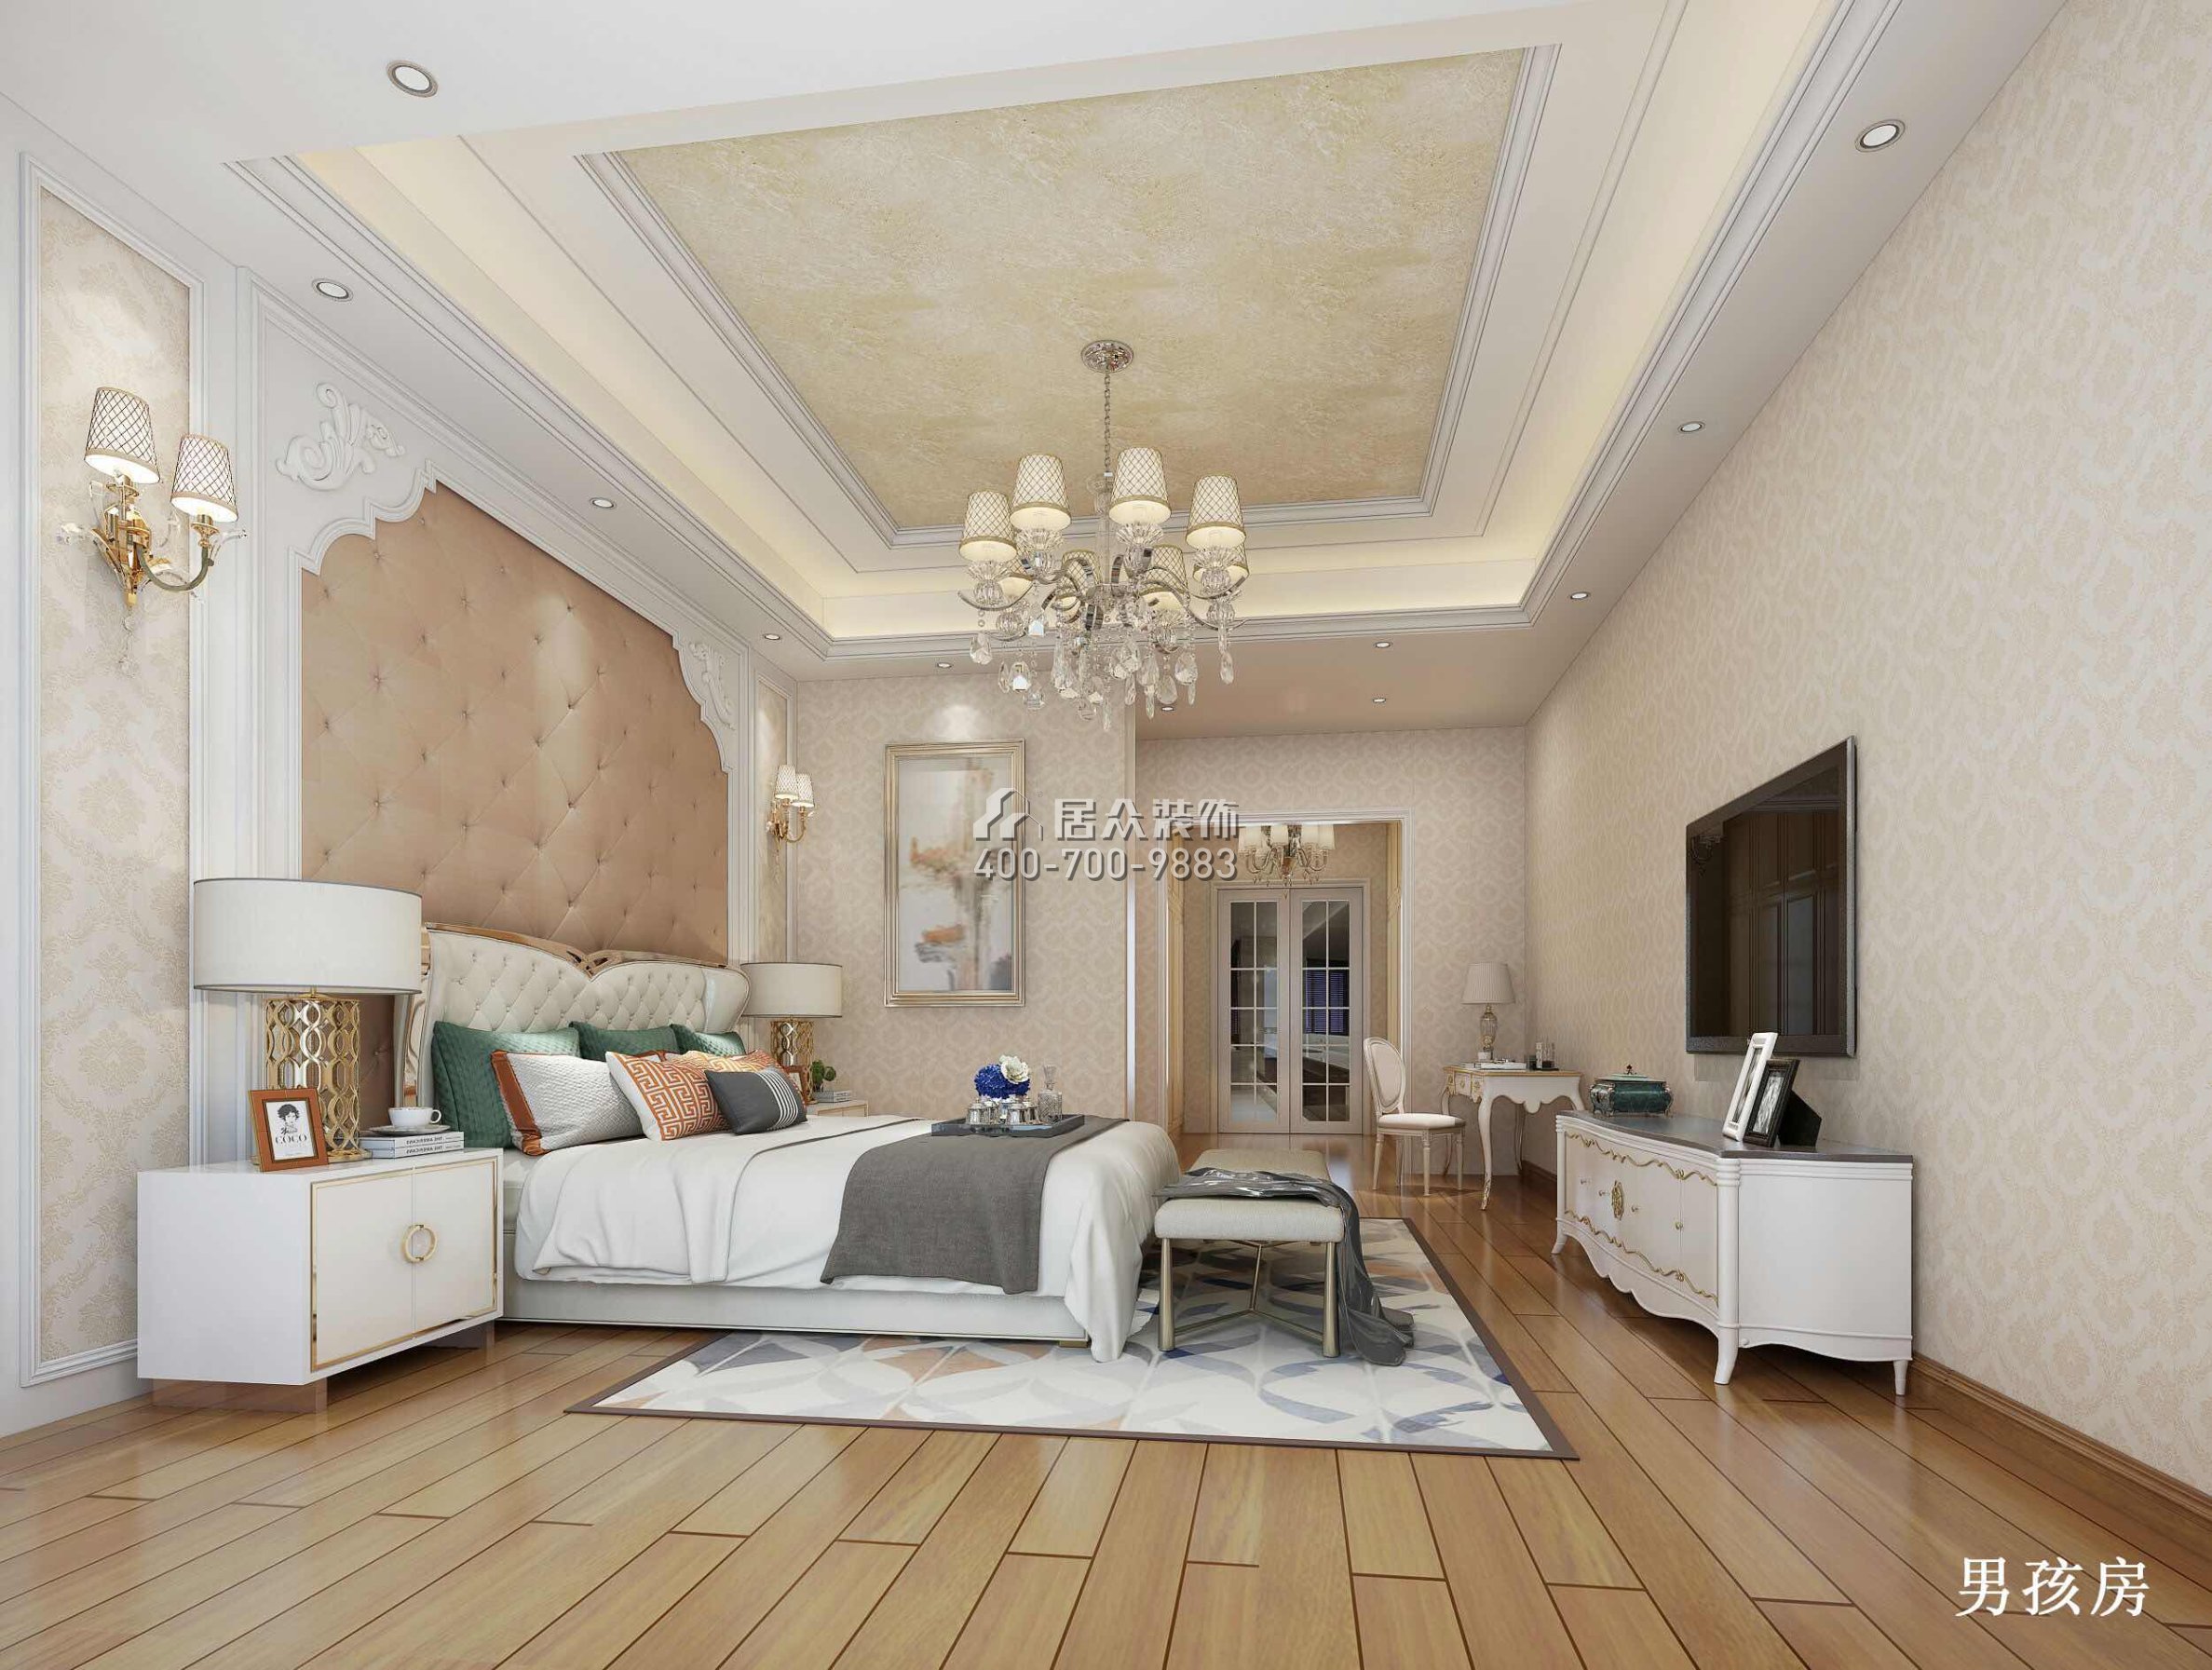 新世纪领居500平方米欧式风格别墅户型卧室装修效果图